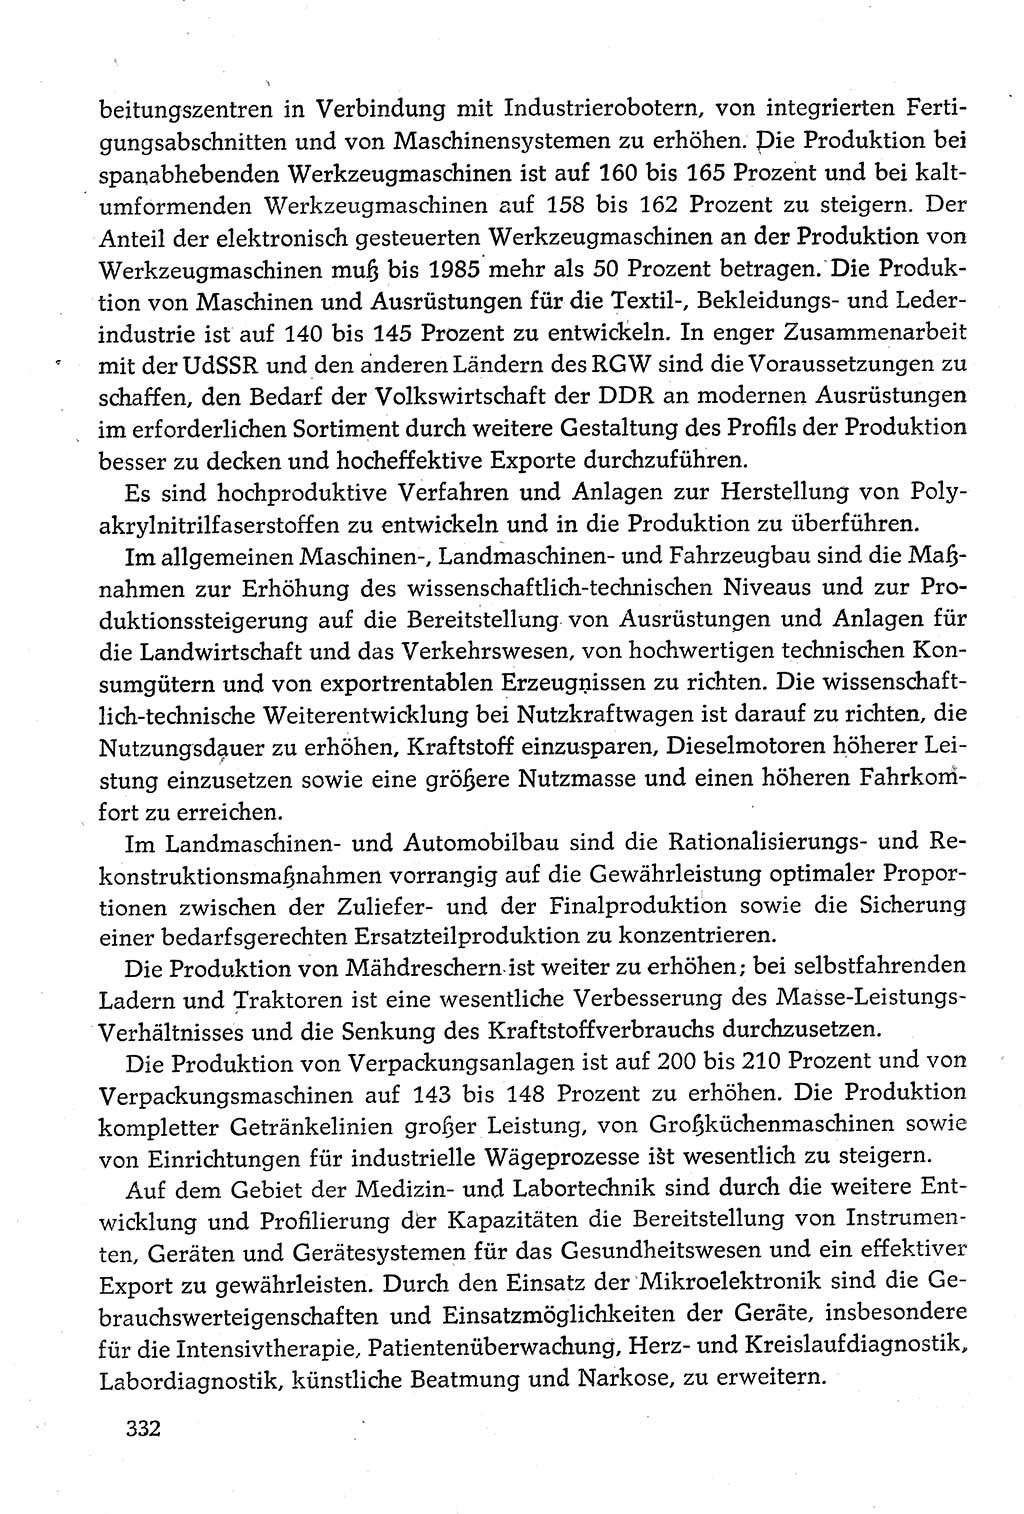 Dokumente der Sozialistischen Einheitspartei Deutschlands (SED) [Deutsche Demokratische Republik (DDR)] 1980-1981, Seite 332 (Dok. SED DDR 1980-1981, S. 332)